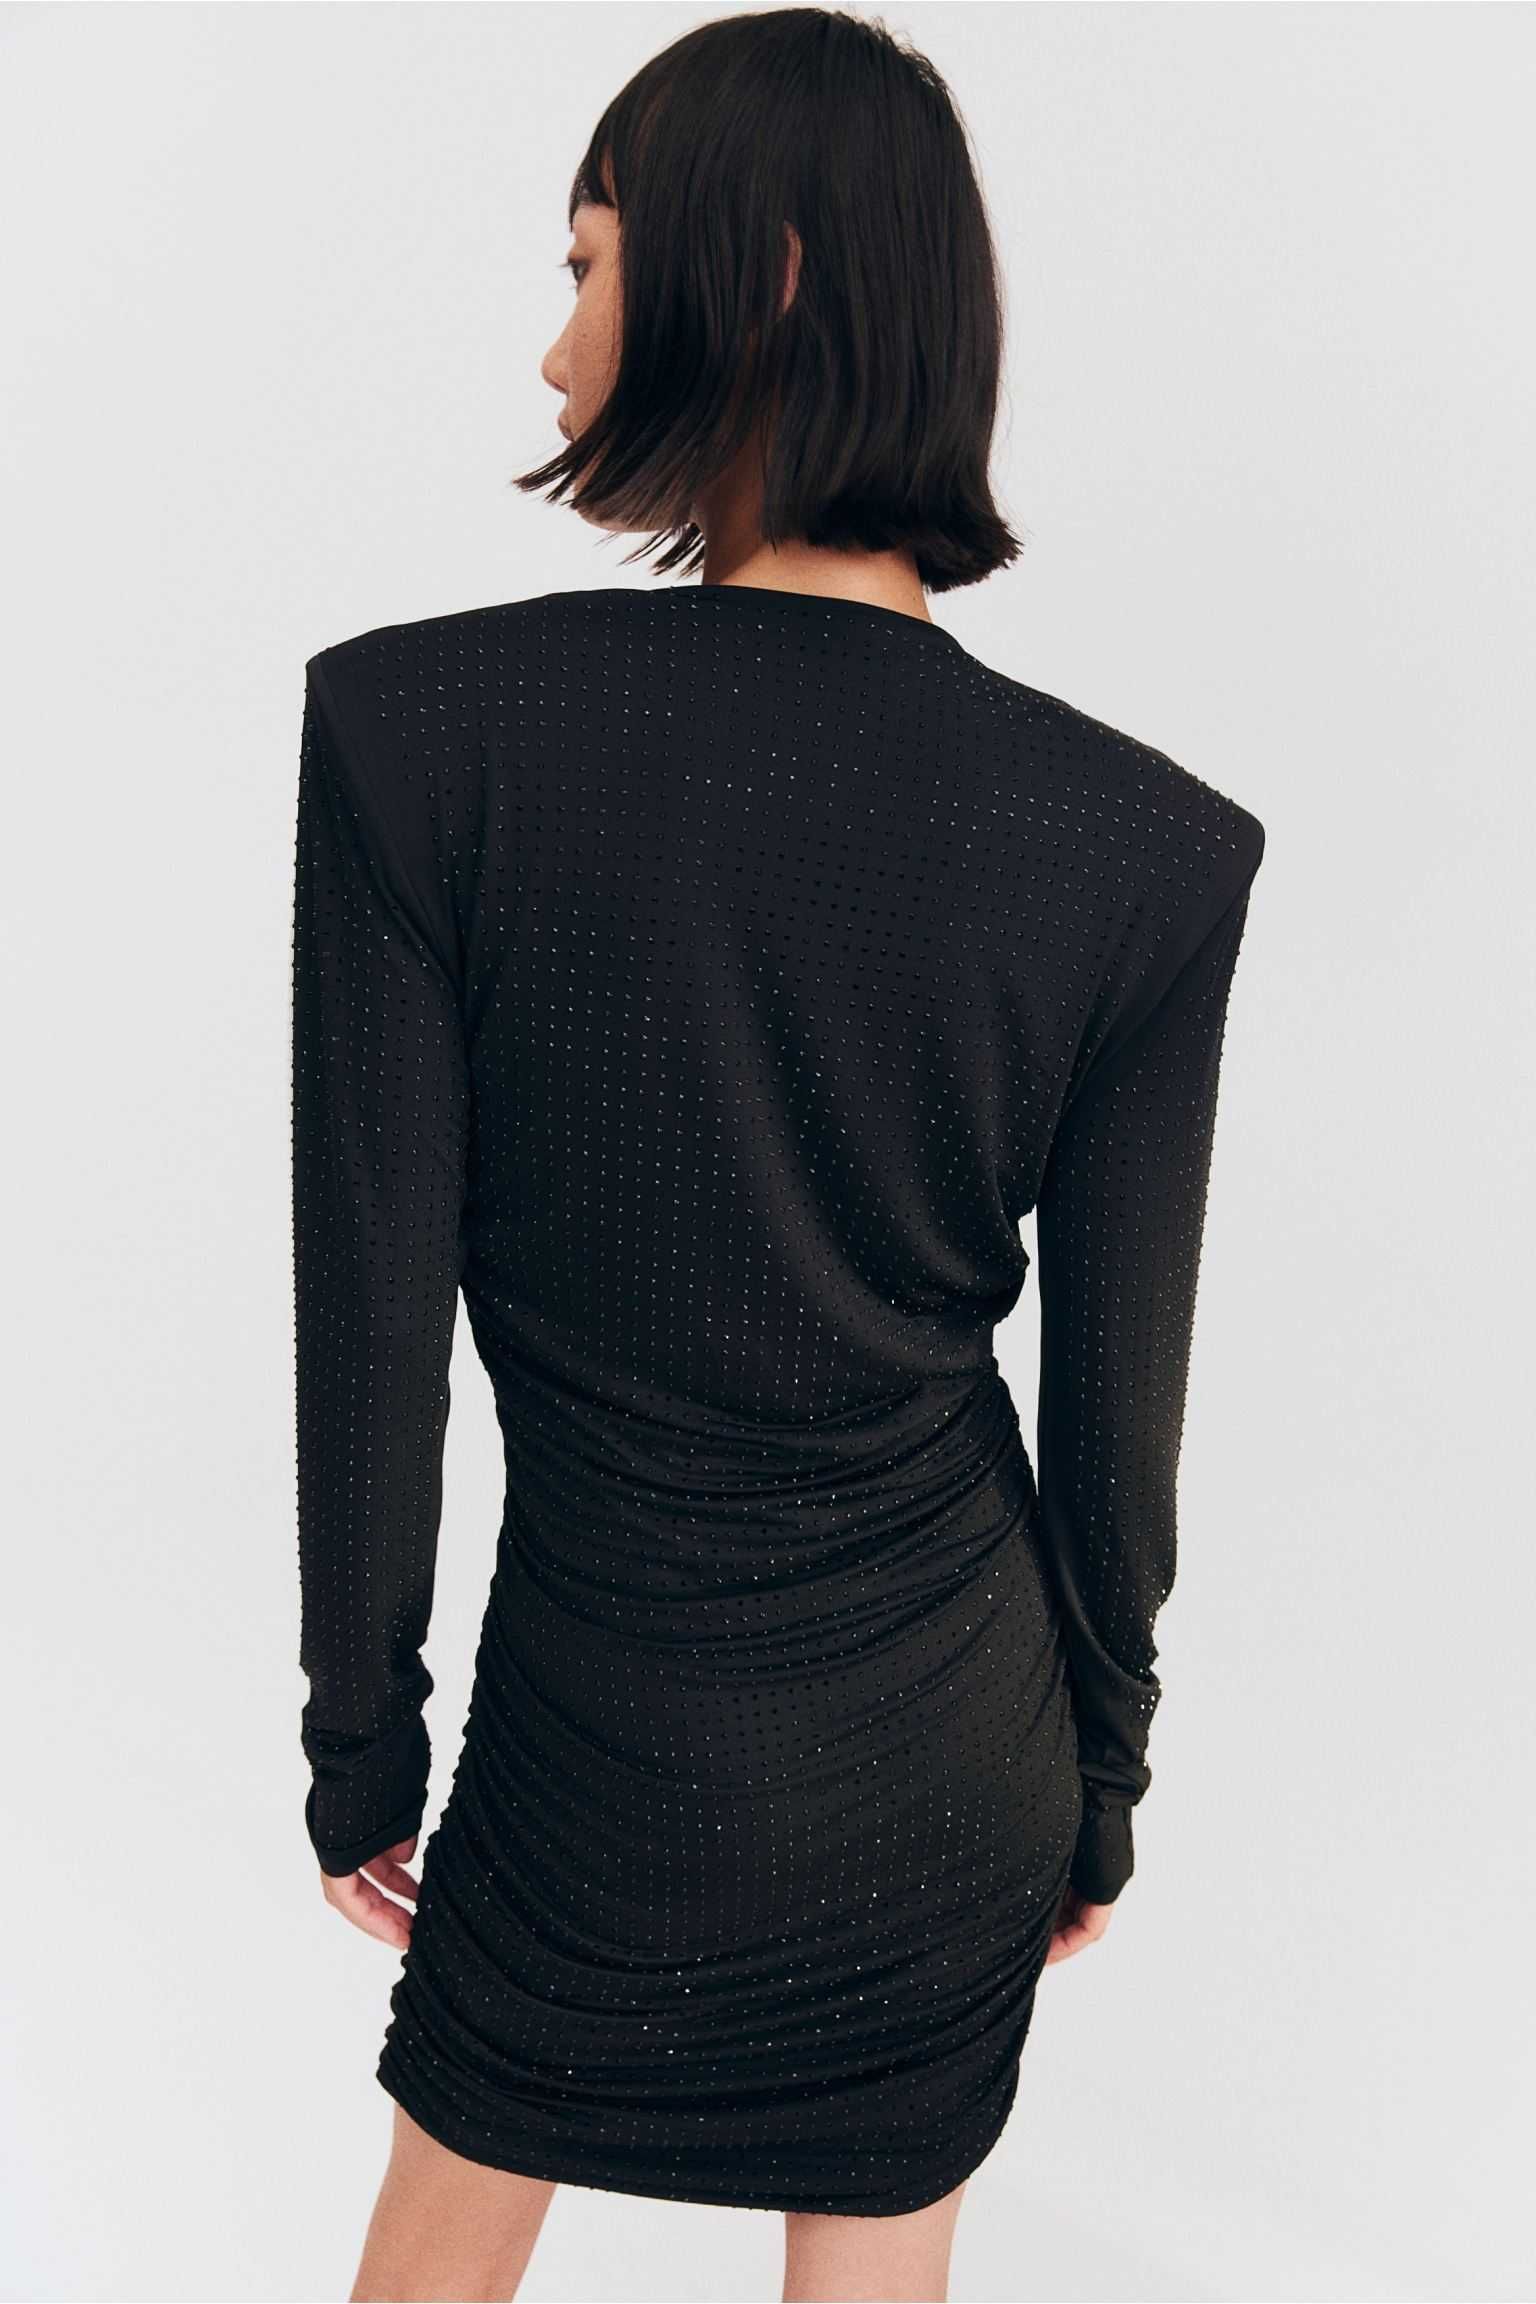 Sukienka H&M mała czarna cyrkonie , strass